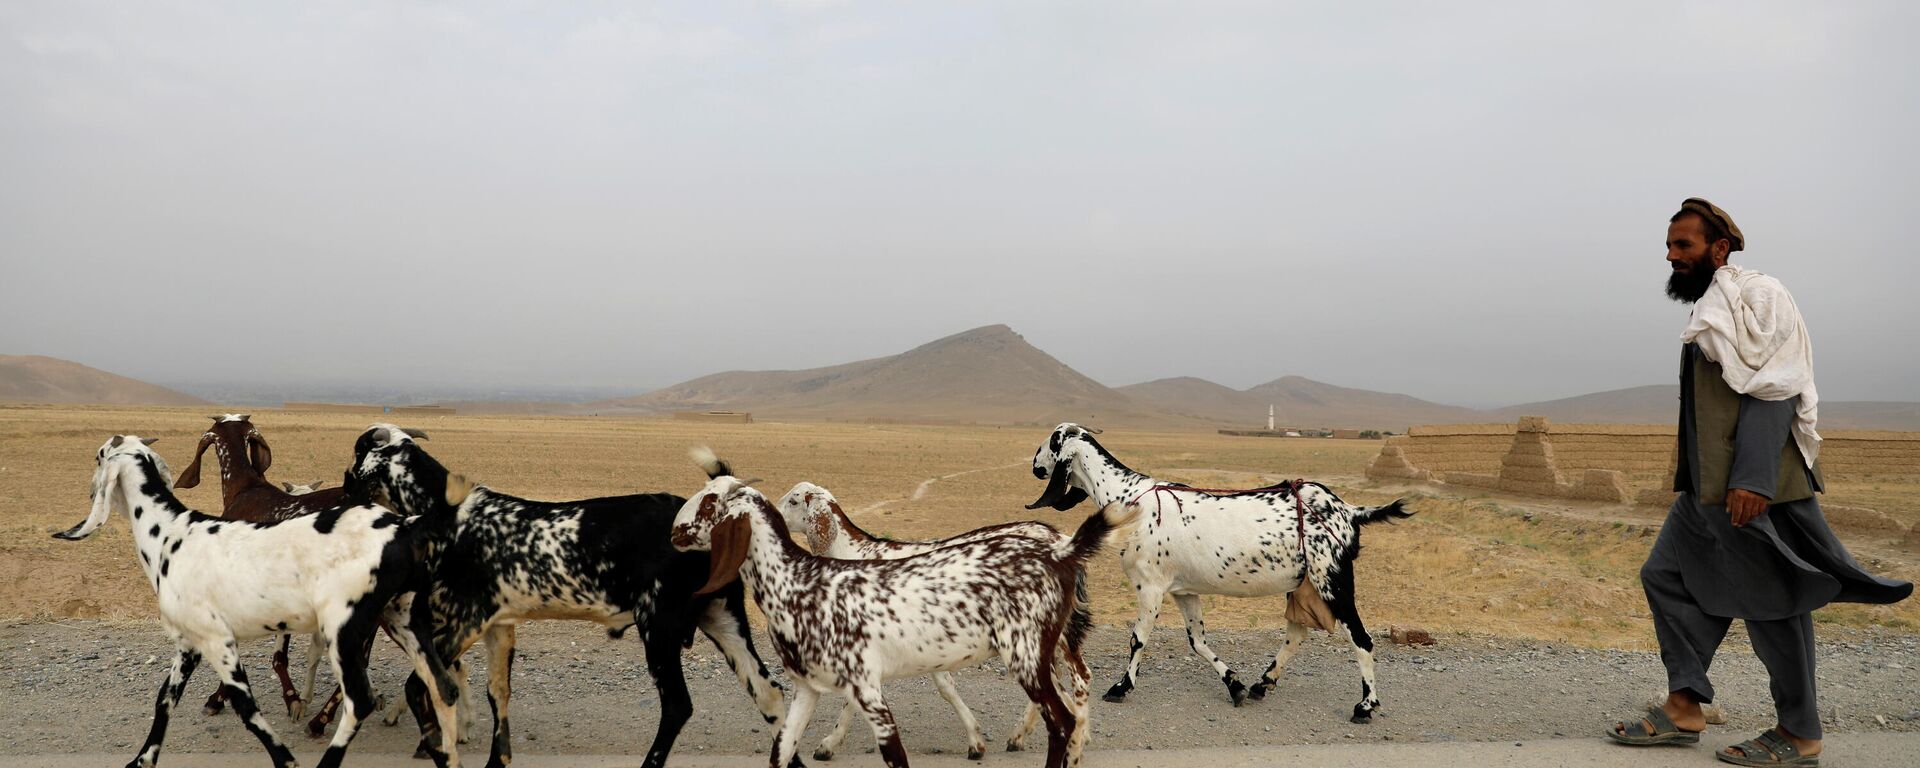 Un hombre afgano con unas cabras - Sputnik Mundo, 1920, 13.07.2021